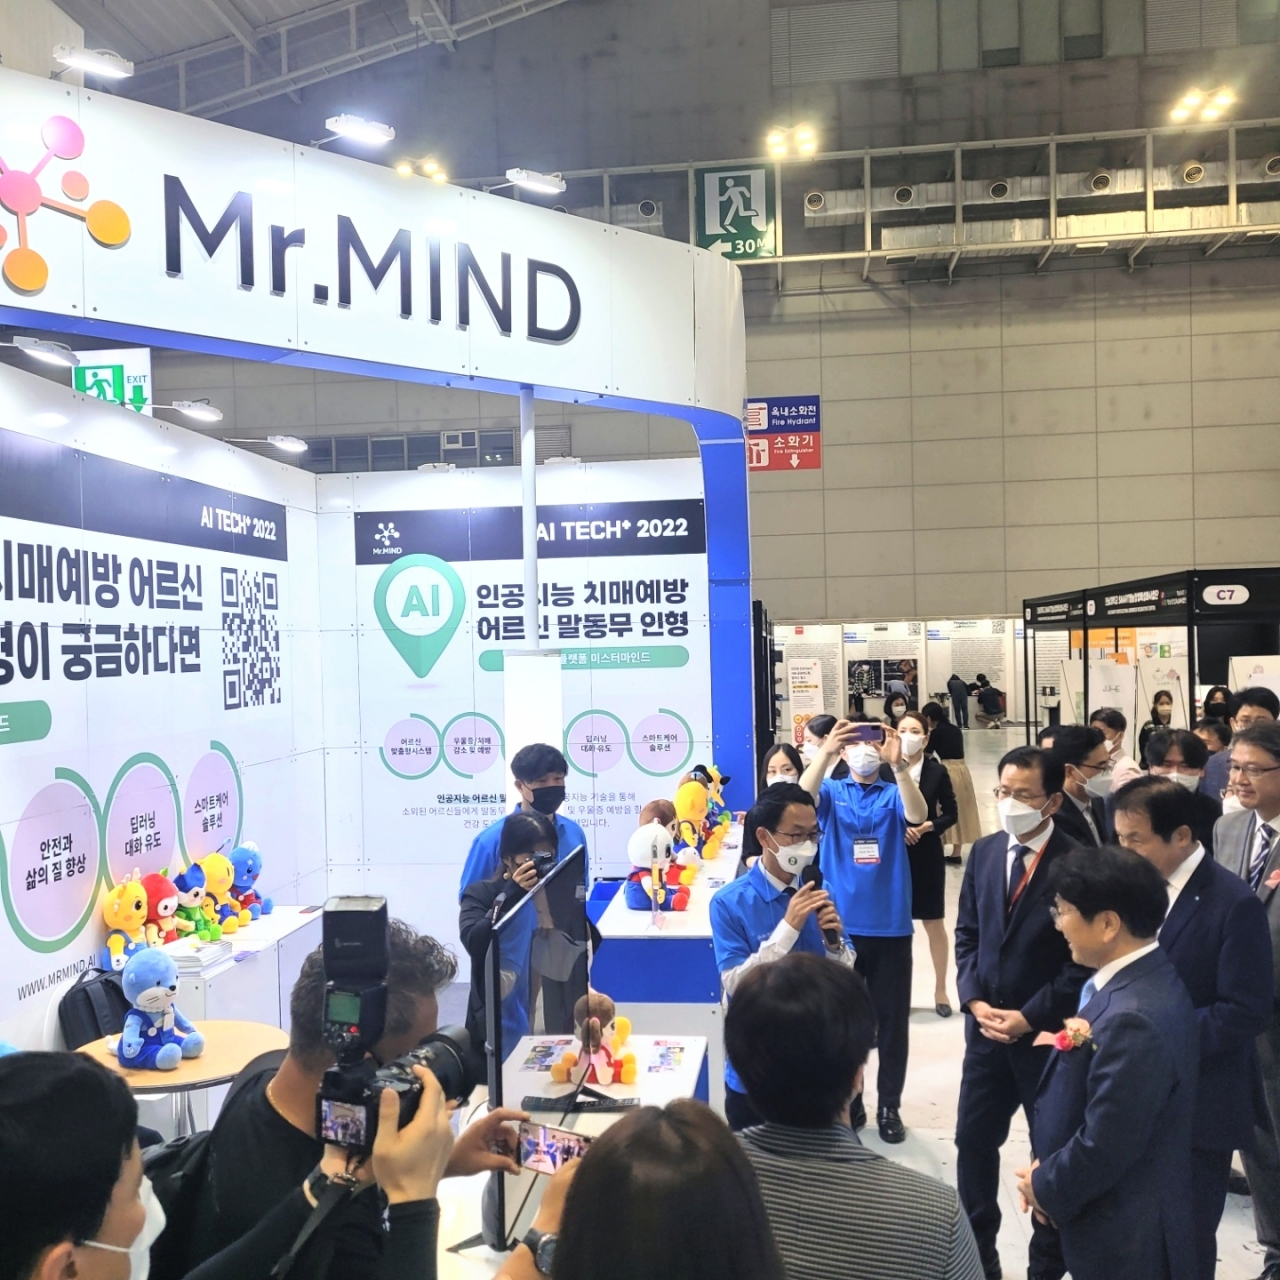 미스터마인드가 30일까지 광주 김대중컨벤션센터에서 열리는 AI 테크플러스 행사에 참가한다. 사진은 미스터마인드 부스 전경. [사진=미스터마인드]